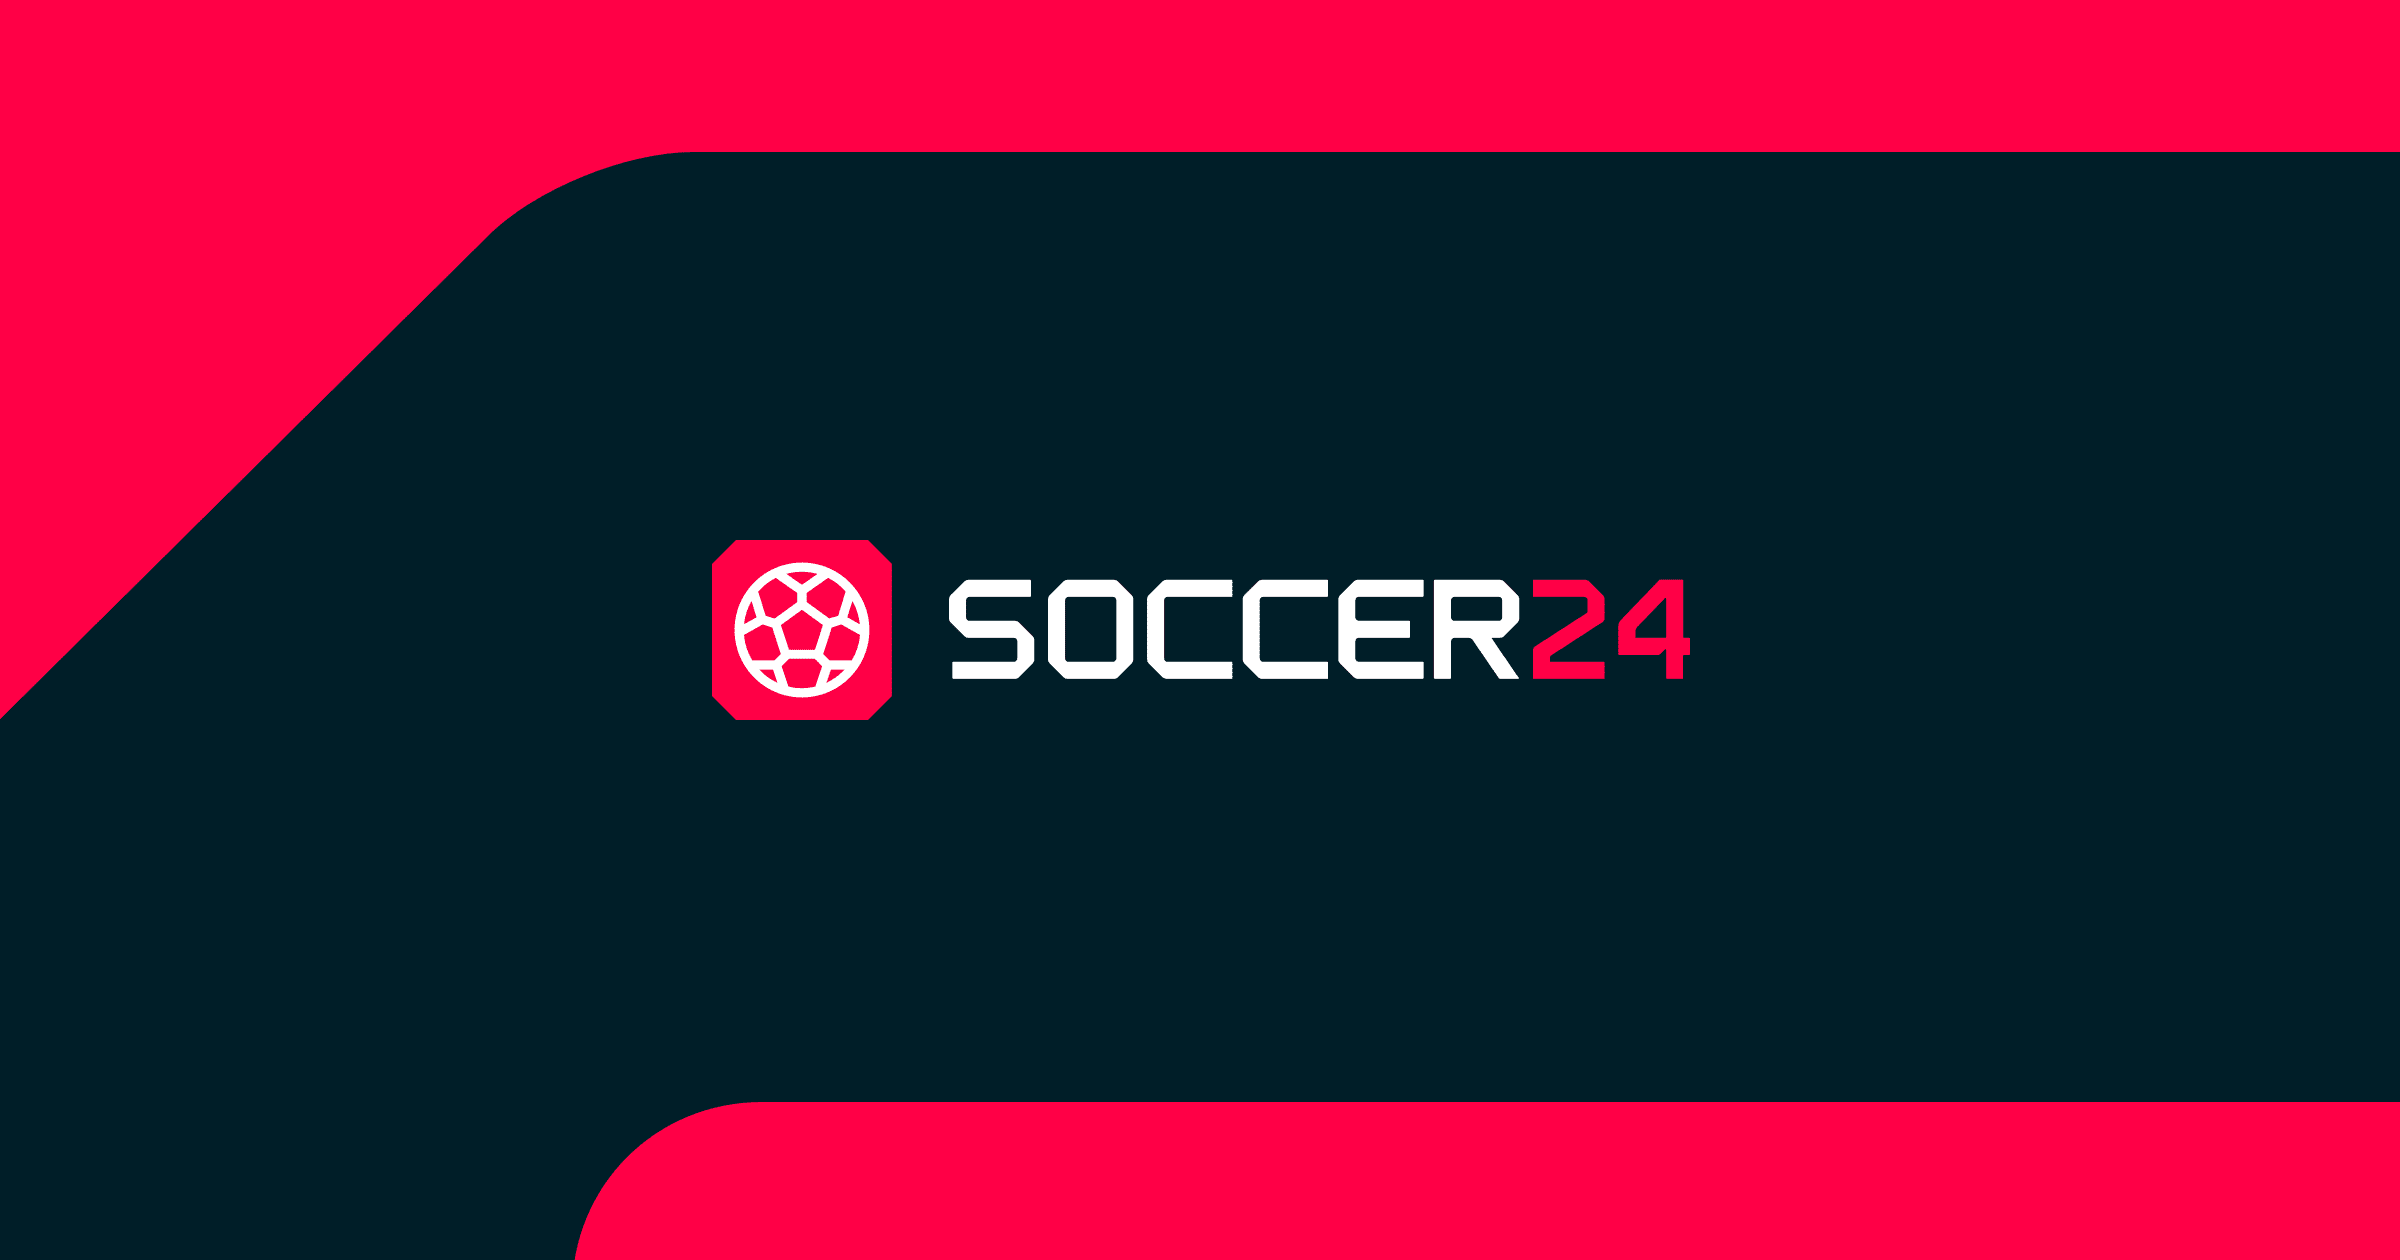 www.soccer24.com